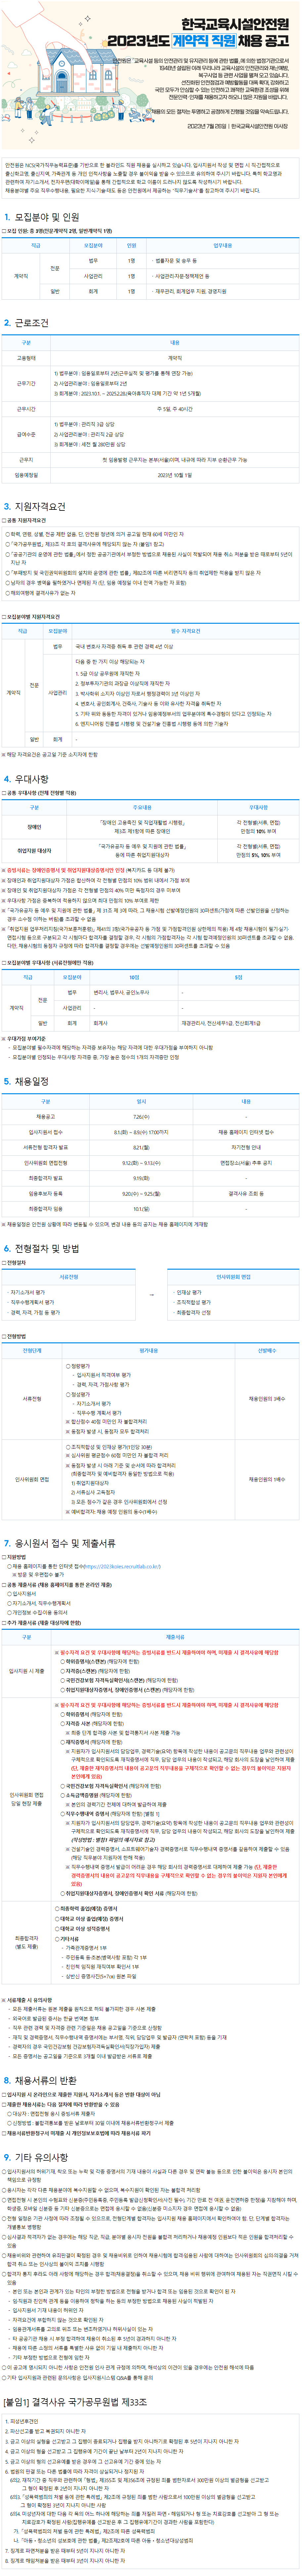 2023년도 한국교육시설안전원_계약직 채용공고(최종).png